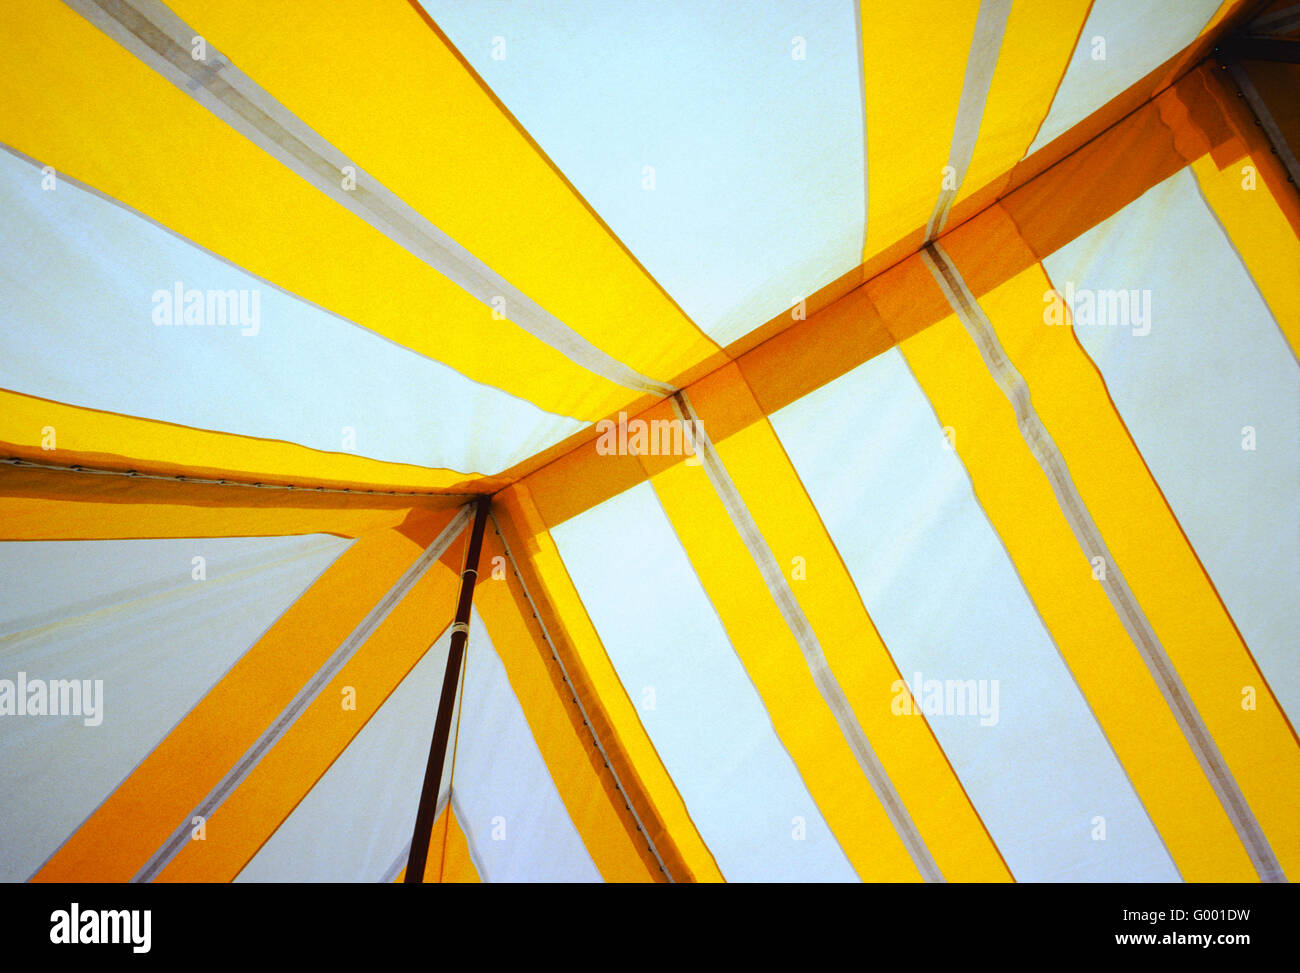 Ver resumen gráfico del interior de una gran carpa evento amarillo y blanco Foto de stock